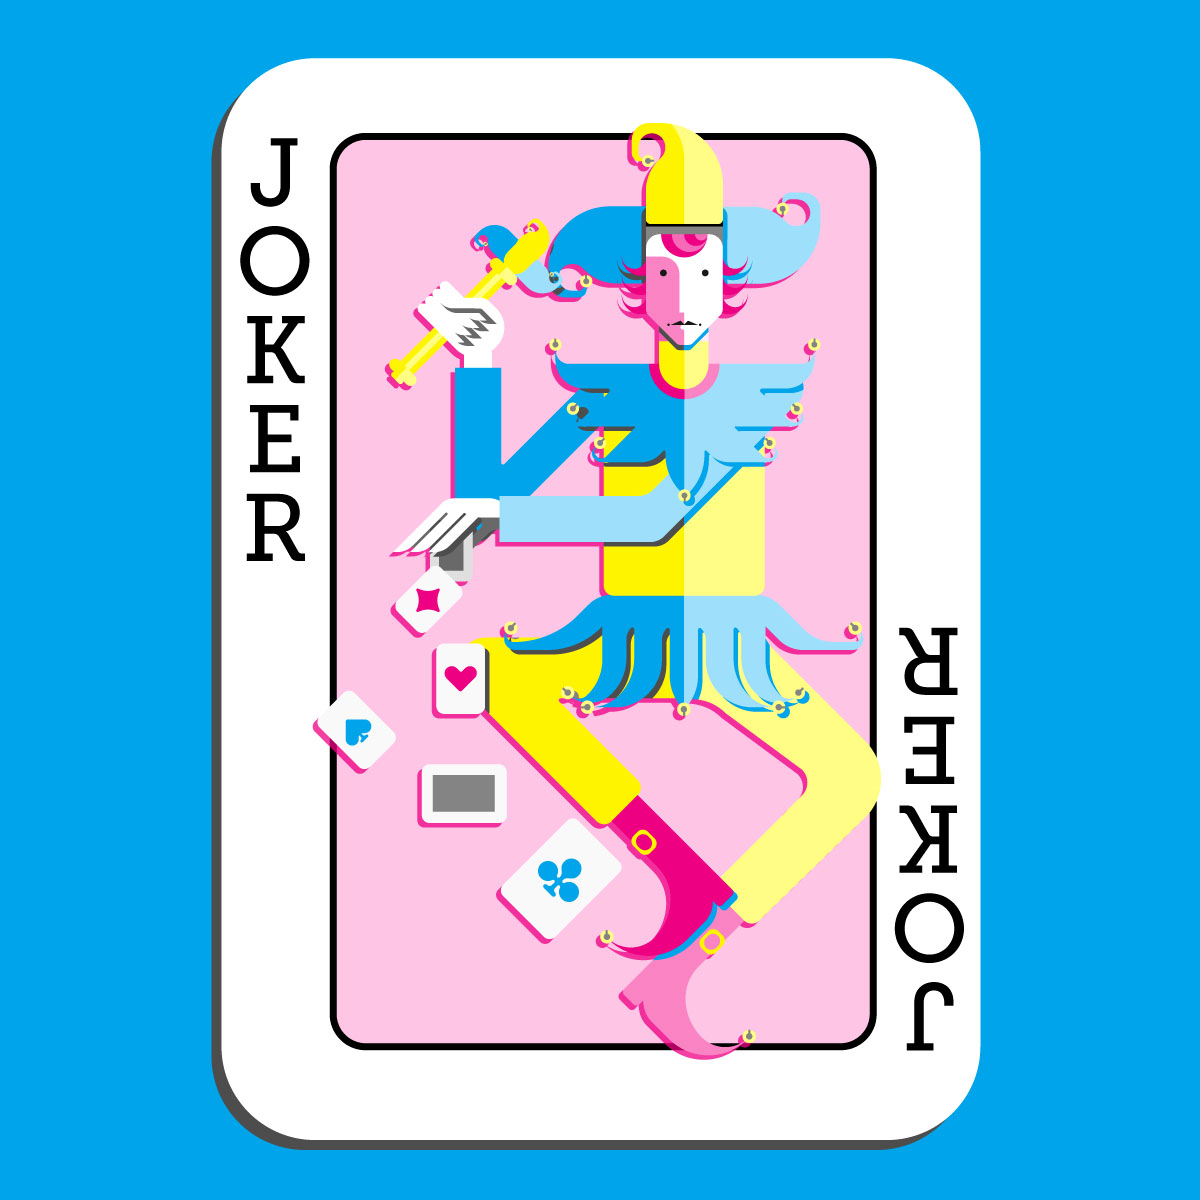 The Joker - The Card Deck